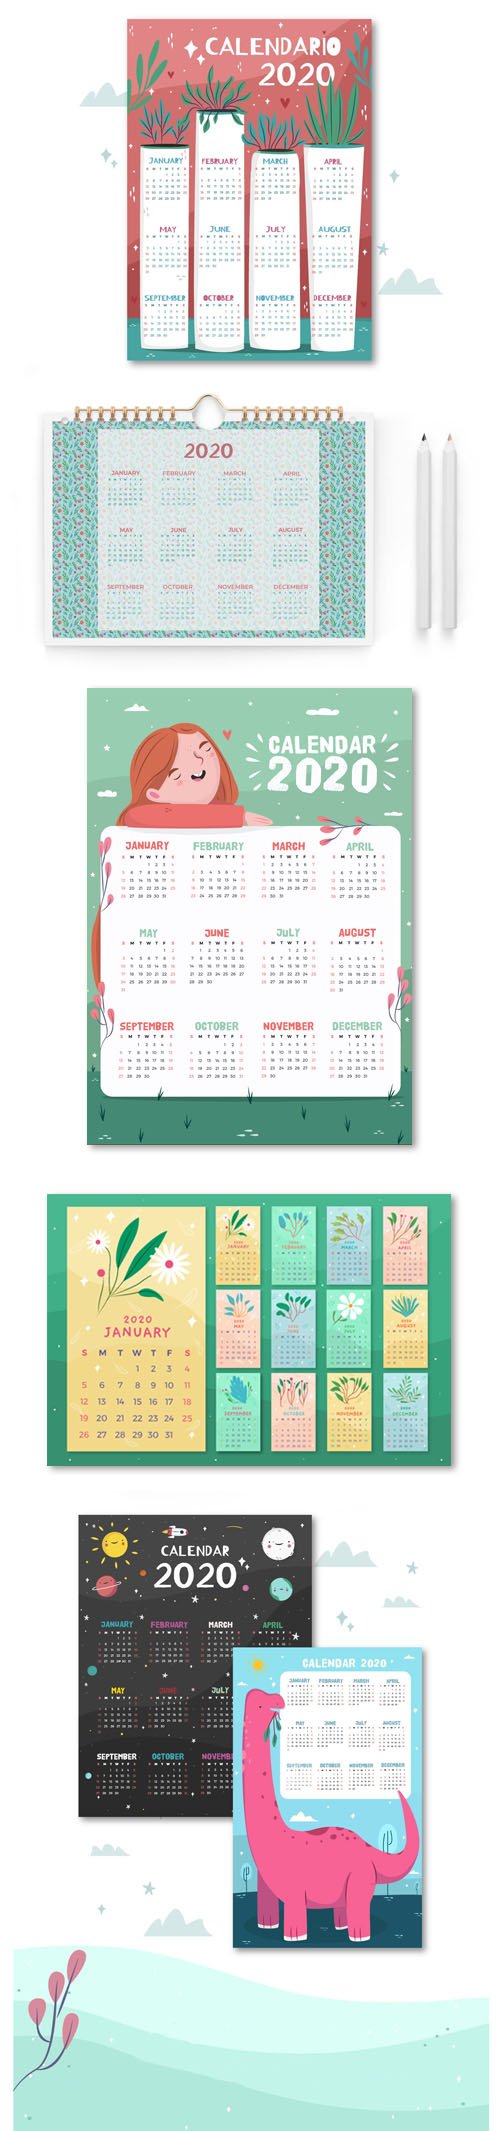 2020 Calendars Vector Collection 2